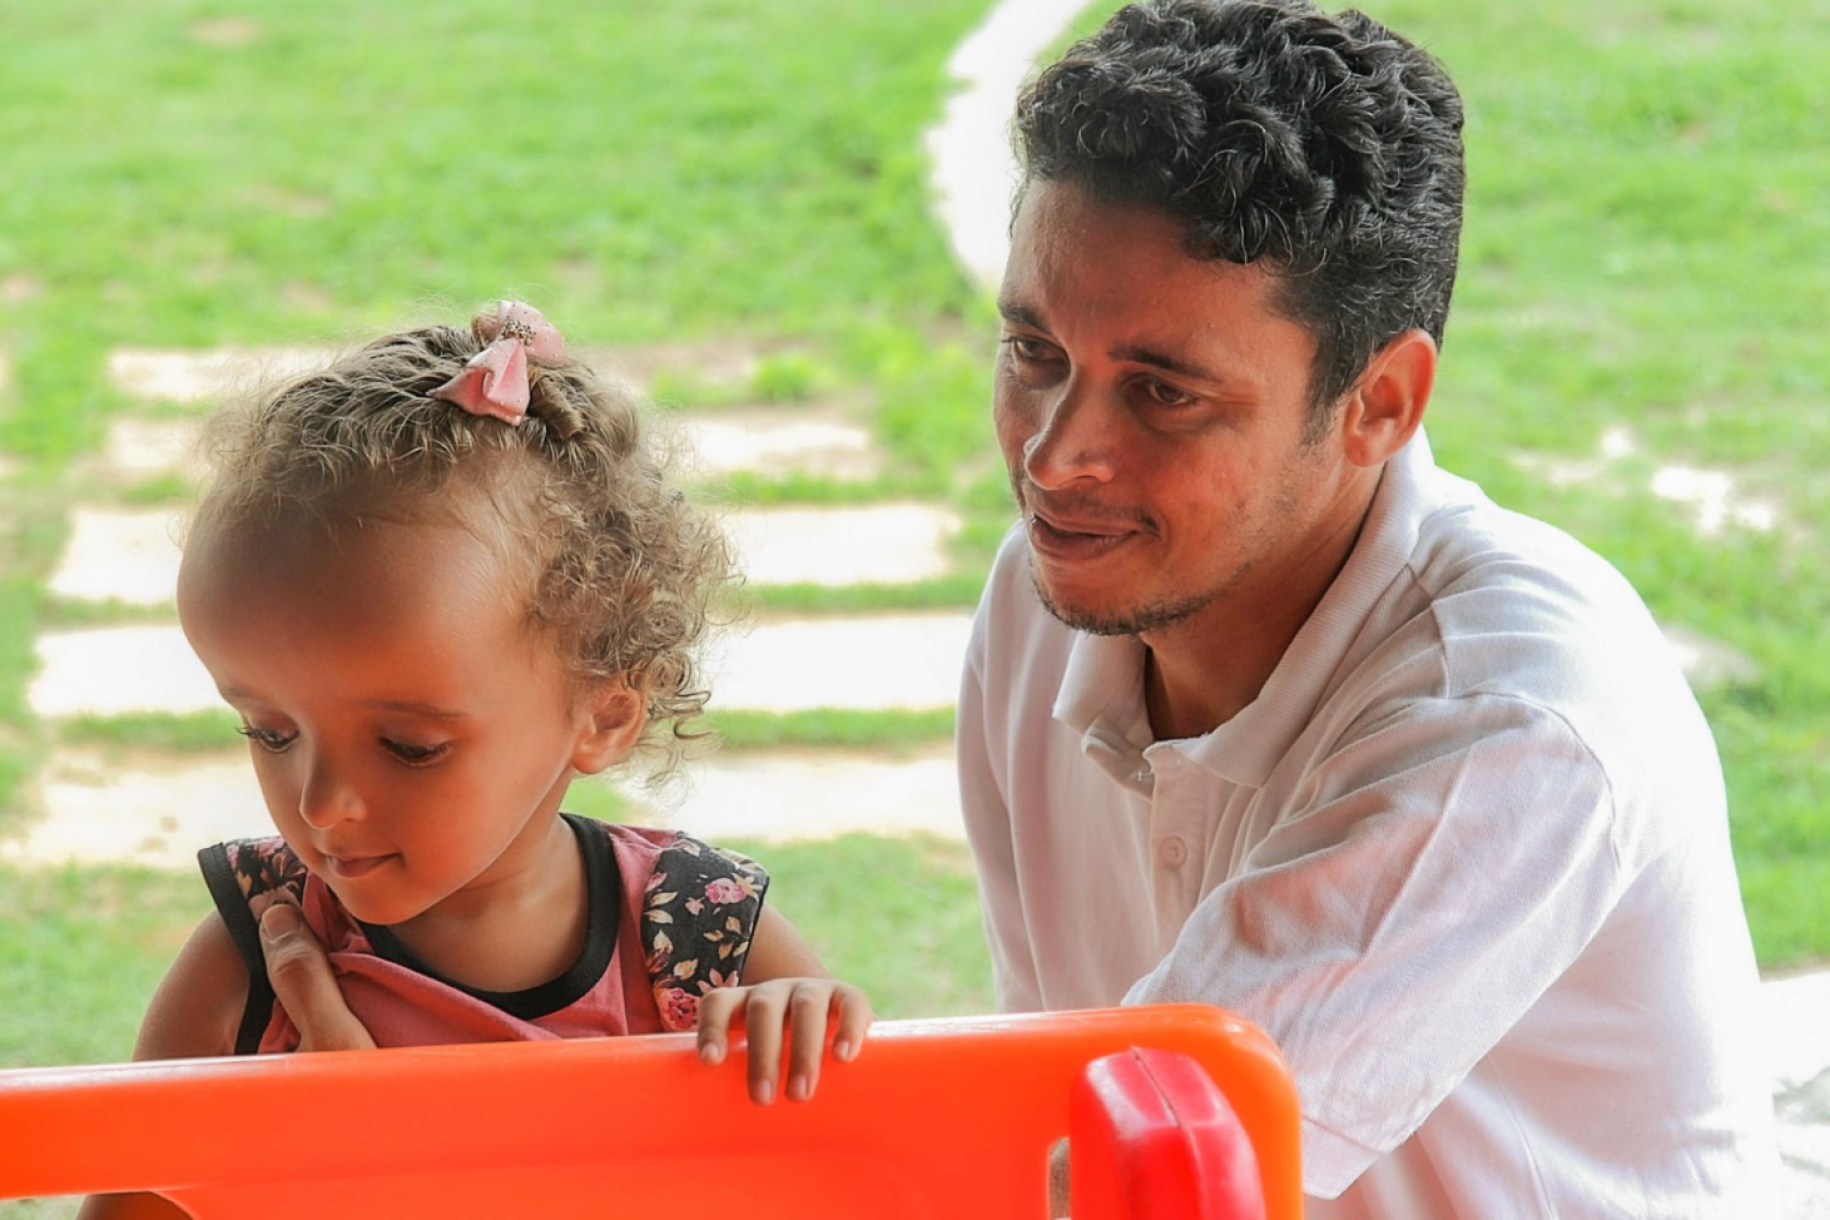 Un hombre y una niña pequeña observan juntos en dirección a un juguete naranja, en un espacio exterior con jardín.